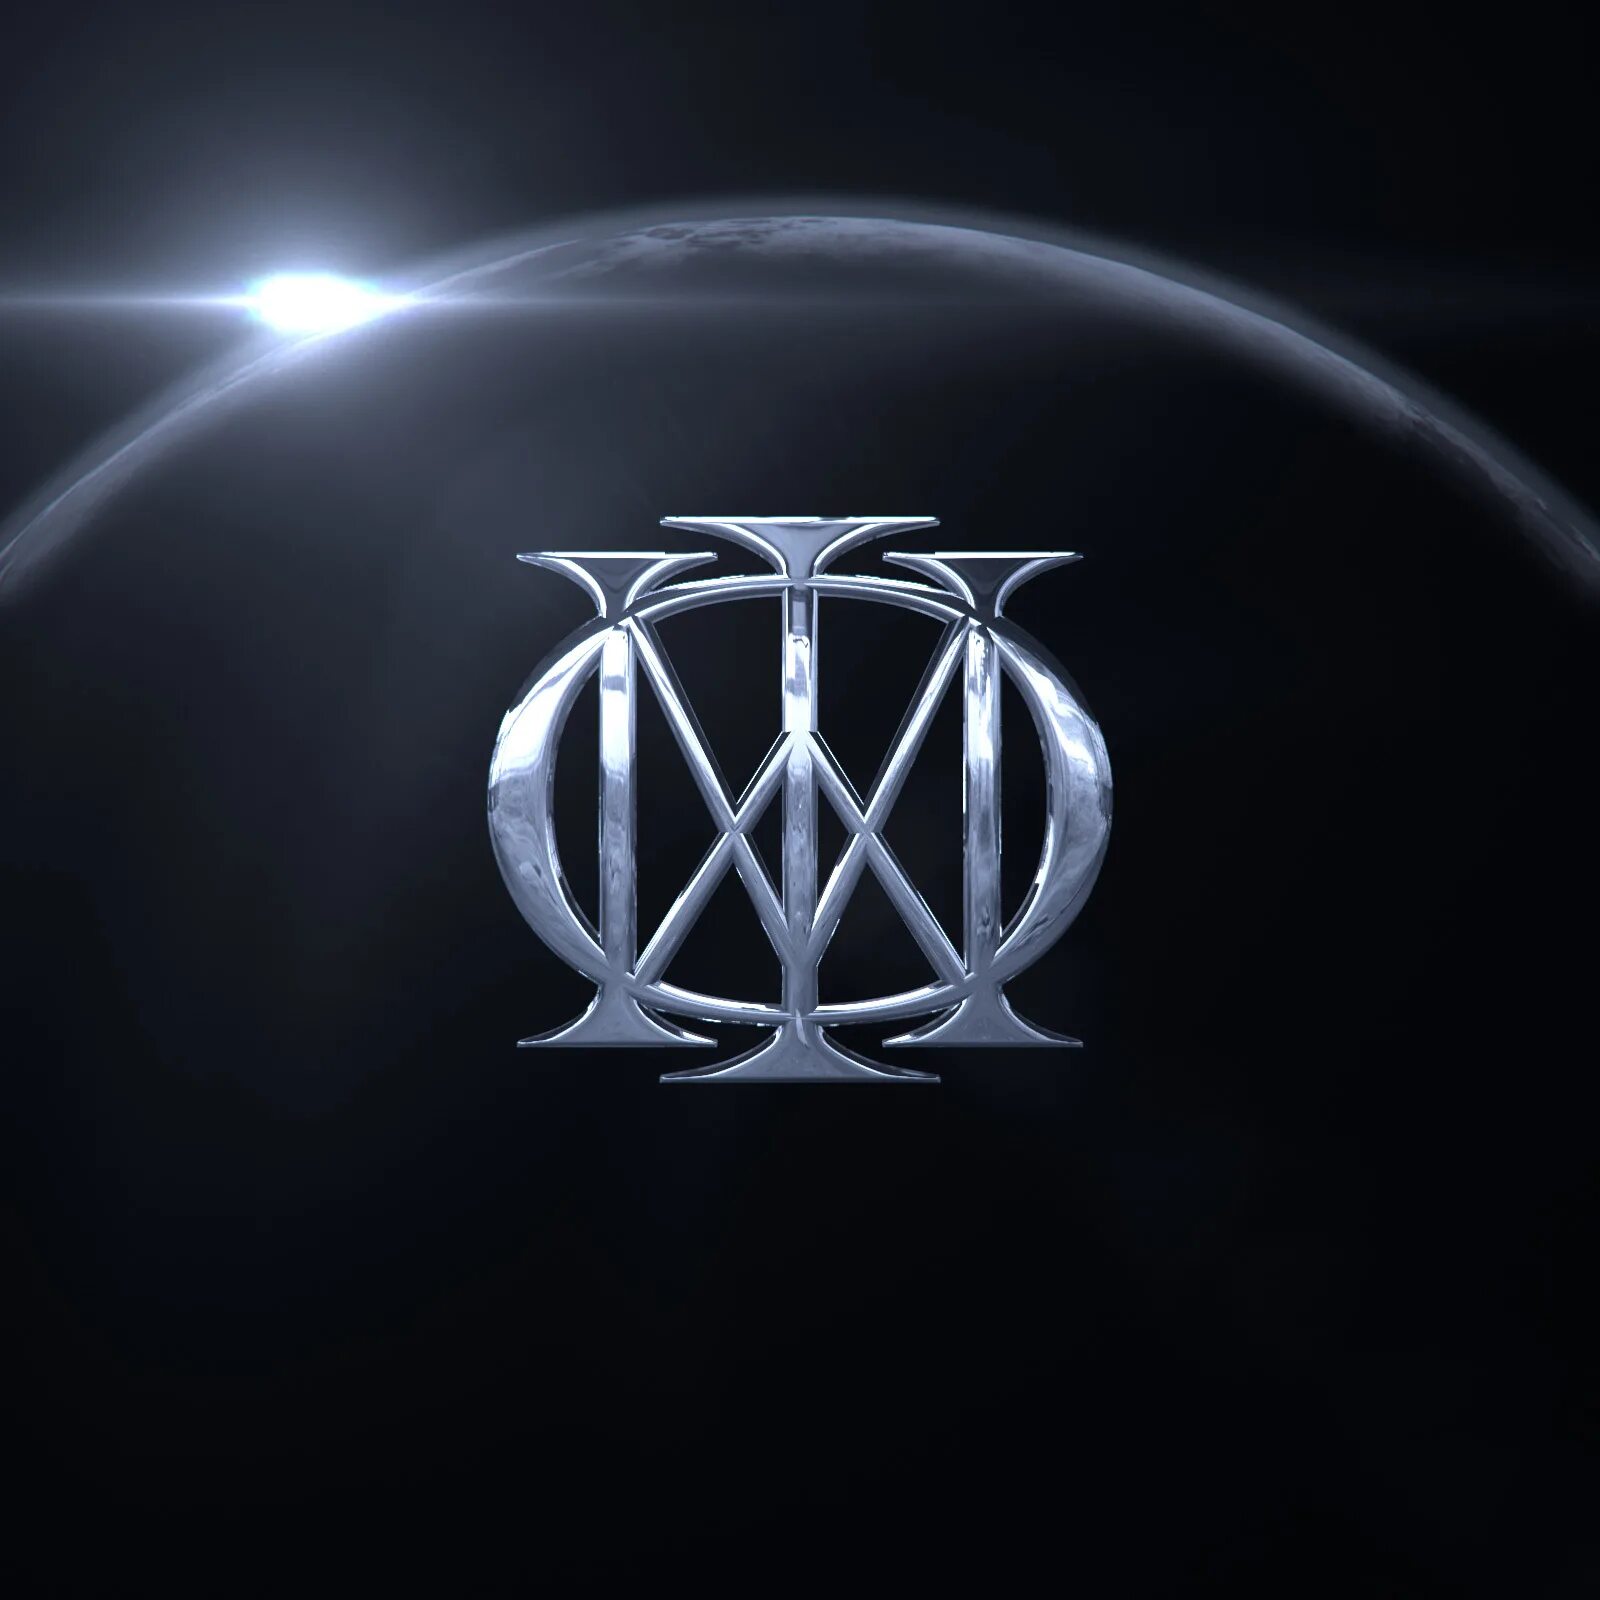 Dream Theater Dream Theater 2013. Dream Theater 2021. Dream Theater Dream Theater 2013 обложка. Логотип группы Dream Theater. Dream theater альбомы